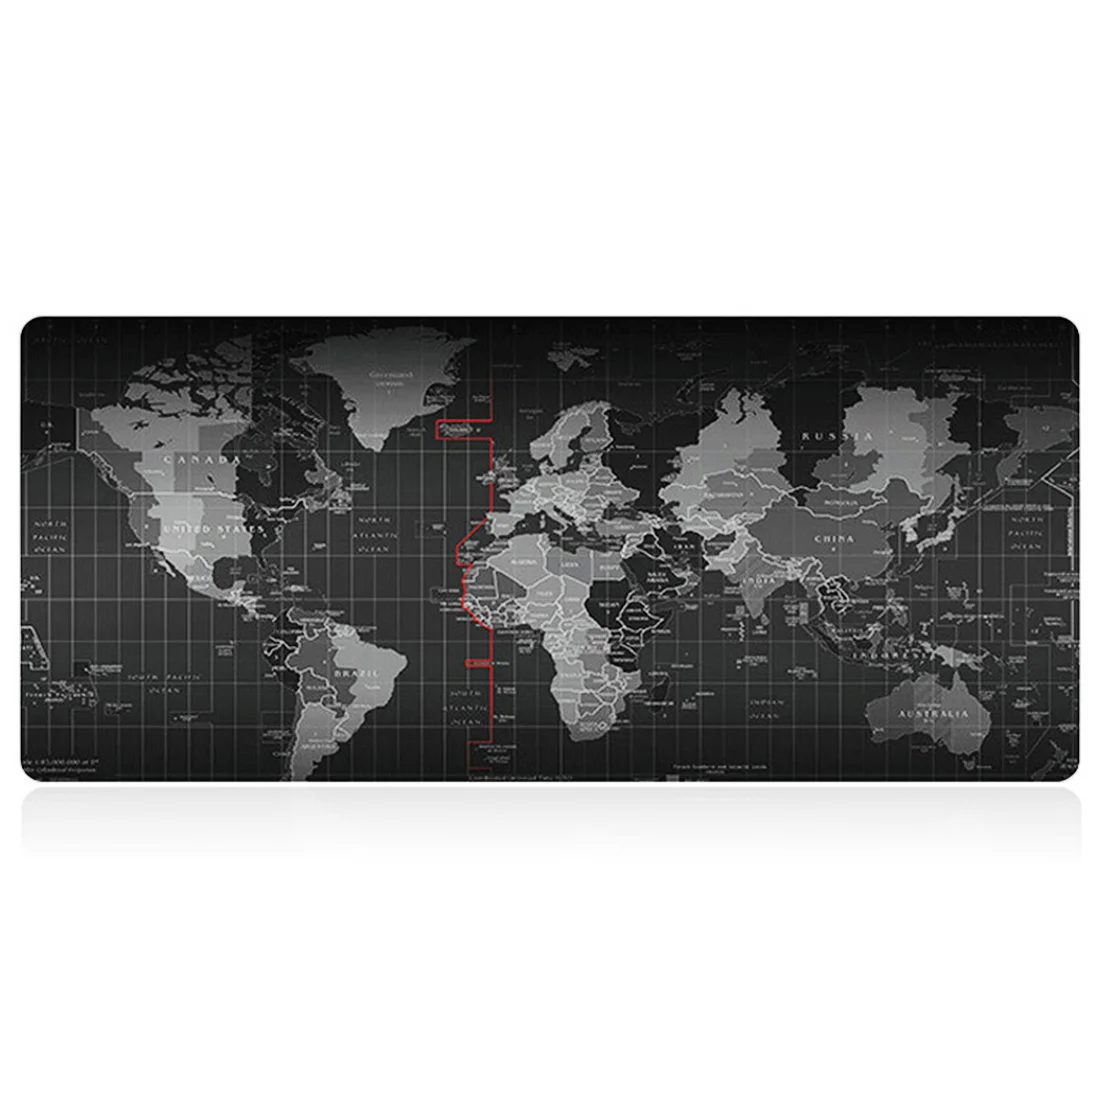 OPQ-новая модная карта старого мира коврик для мыши ноутбук коврик для мыши игровые коврики для мыши игра (70x30 см)